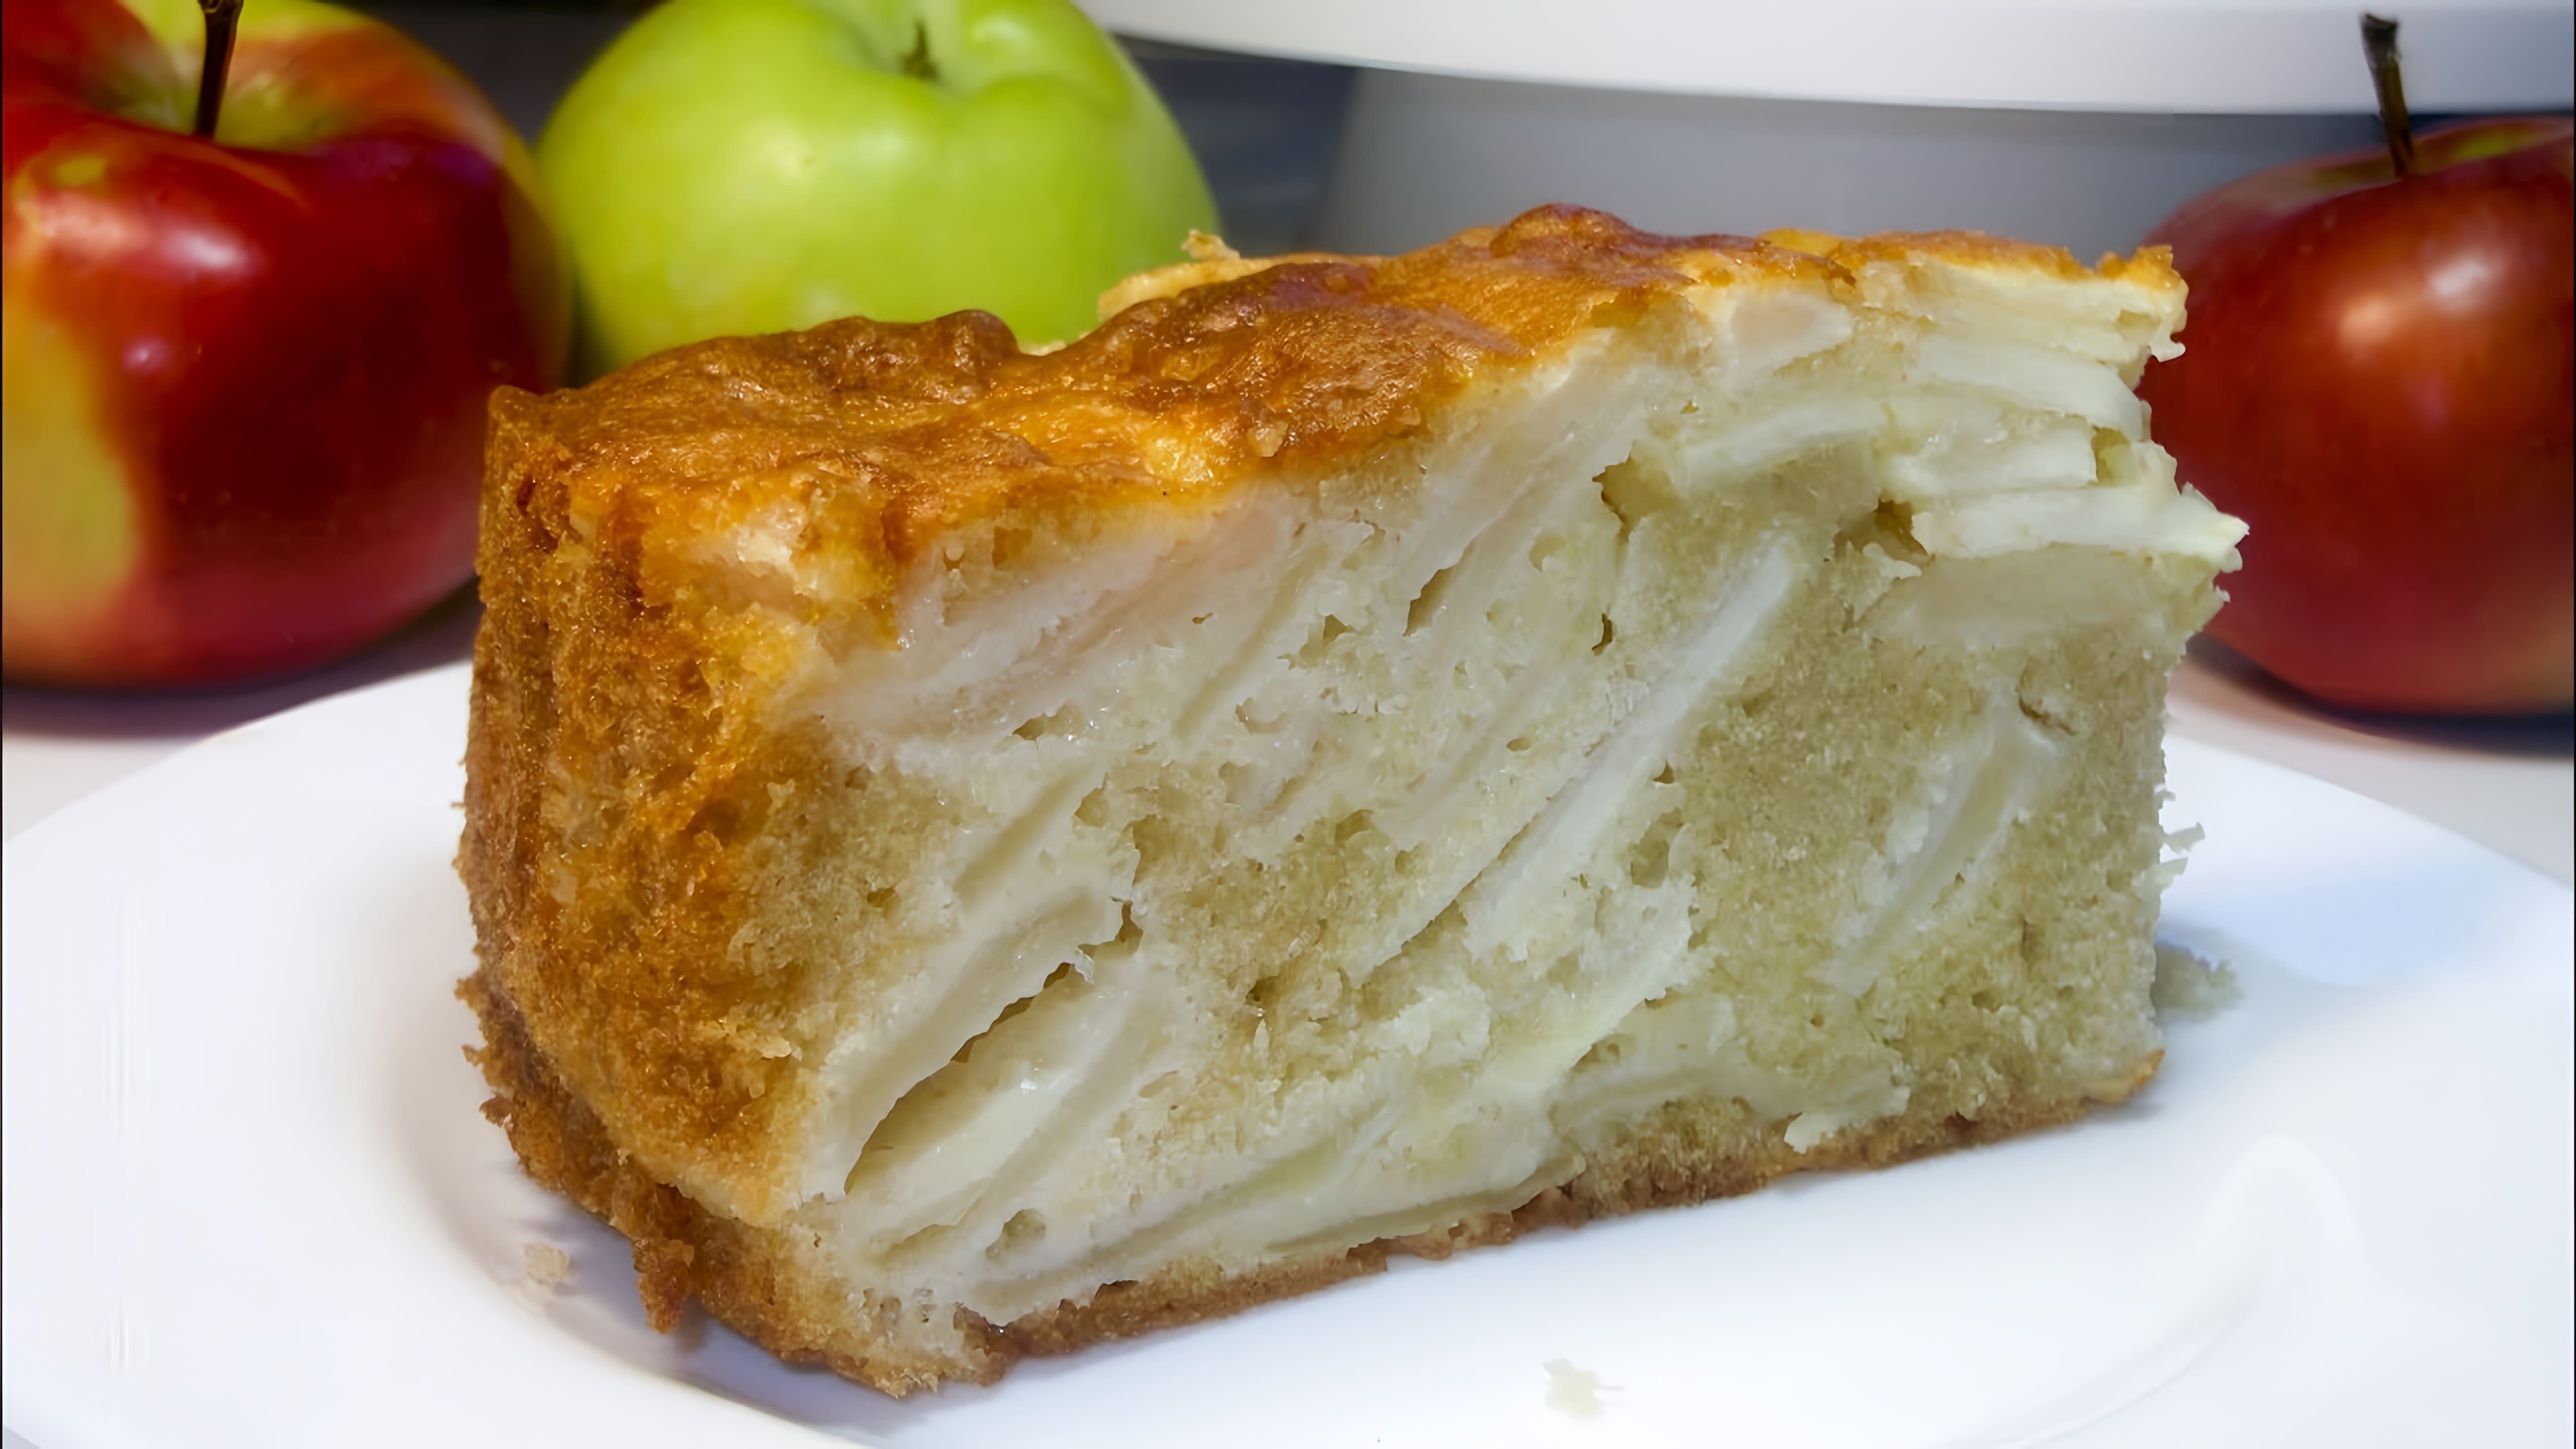 В этом видео-ролике будет показан простой и быстрый рецепт приготовления яблочного пирога, который можно приготовить без использования миксера